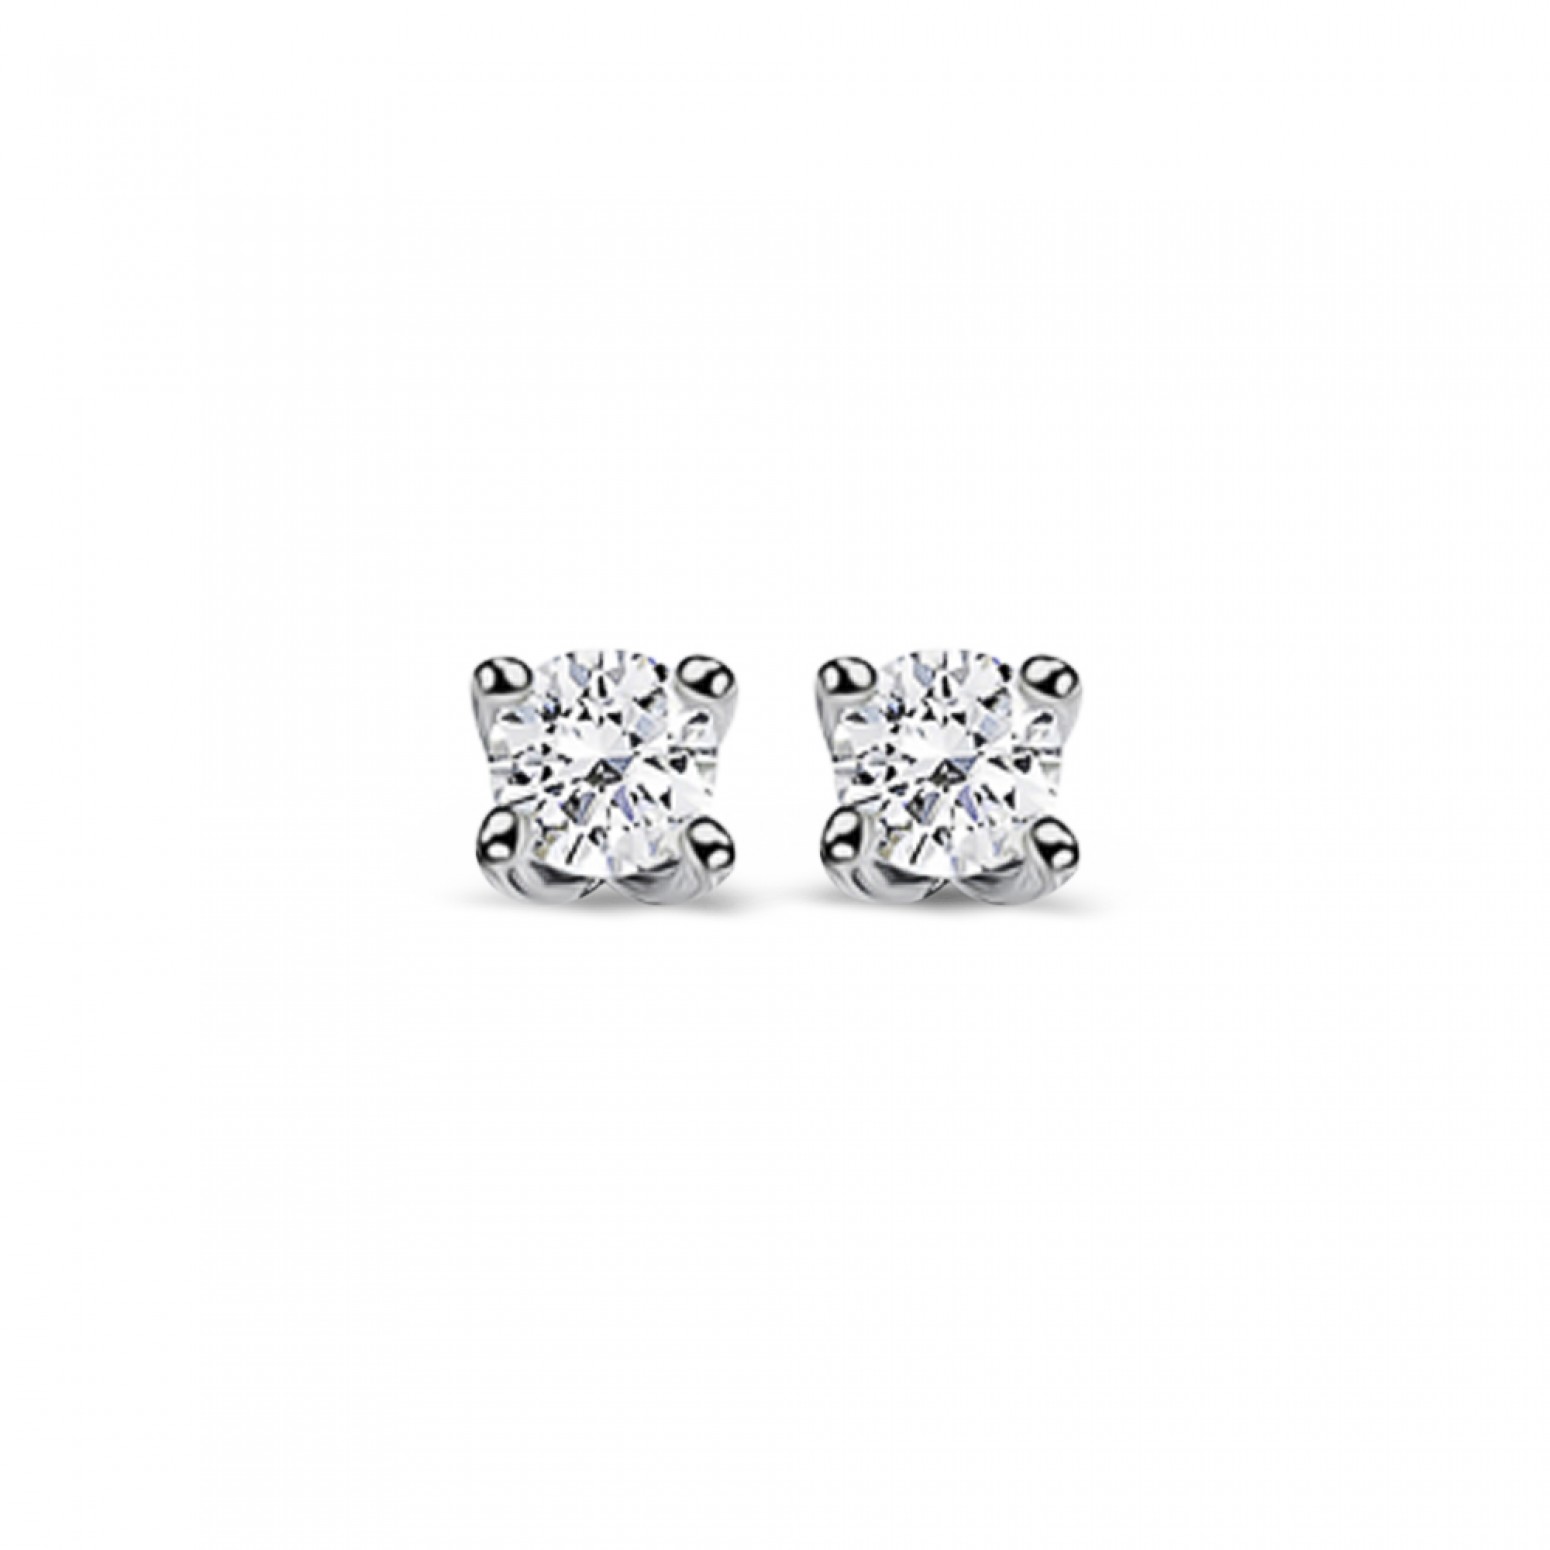 Μονόπετρα σκουλαρίκια Κ18 λευκόχρυσο με διαμάντια 0.11ct, VS2, G από το IGL sk2896 ΣΚΟΥΛΑΡΙΚΙΑ Κοσμηματα - chrilia.gr